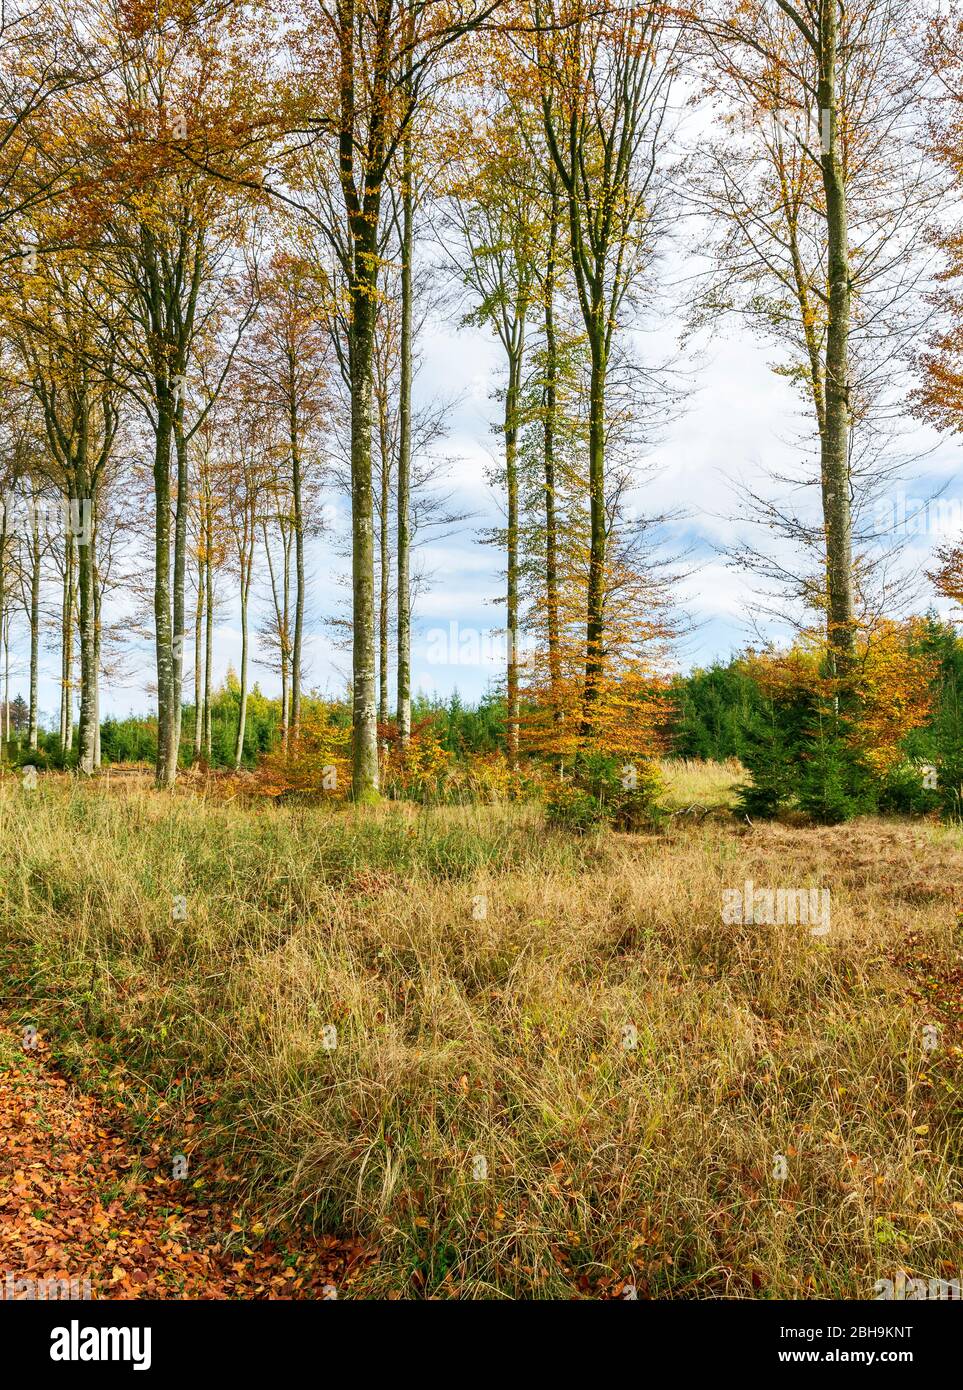 Germania, Baden-Württemberg, Sigmaringen, foresta di faggi nella foresta Josefslust, una zona di caccia della Casa di Hohenzollern. Il parco Josefslust è aperto al pubblico come area ricreativa. Foto Stock